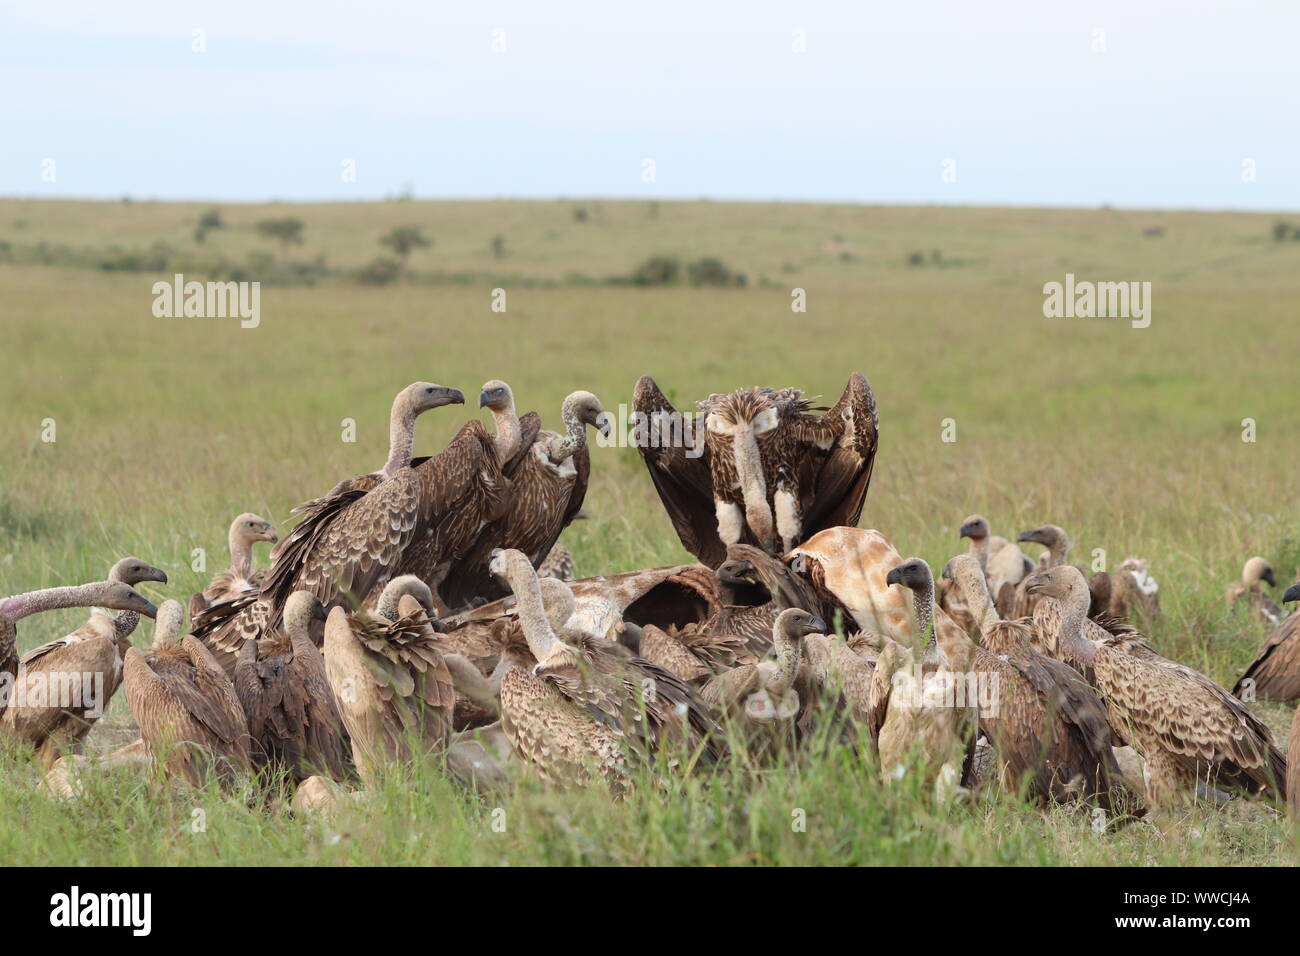 Los buitres alimentándose de un cadáver, el Parque Nacional de Masai Mara, Kenya. Foto de stock